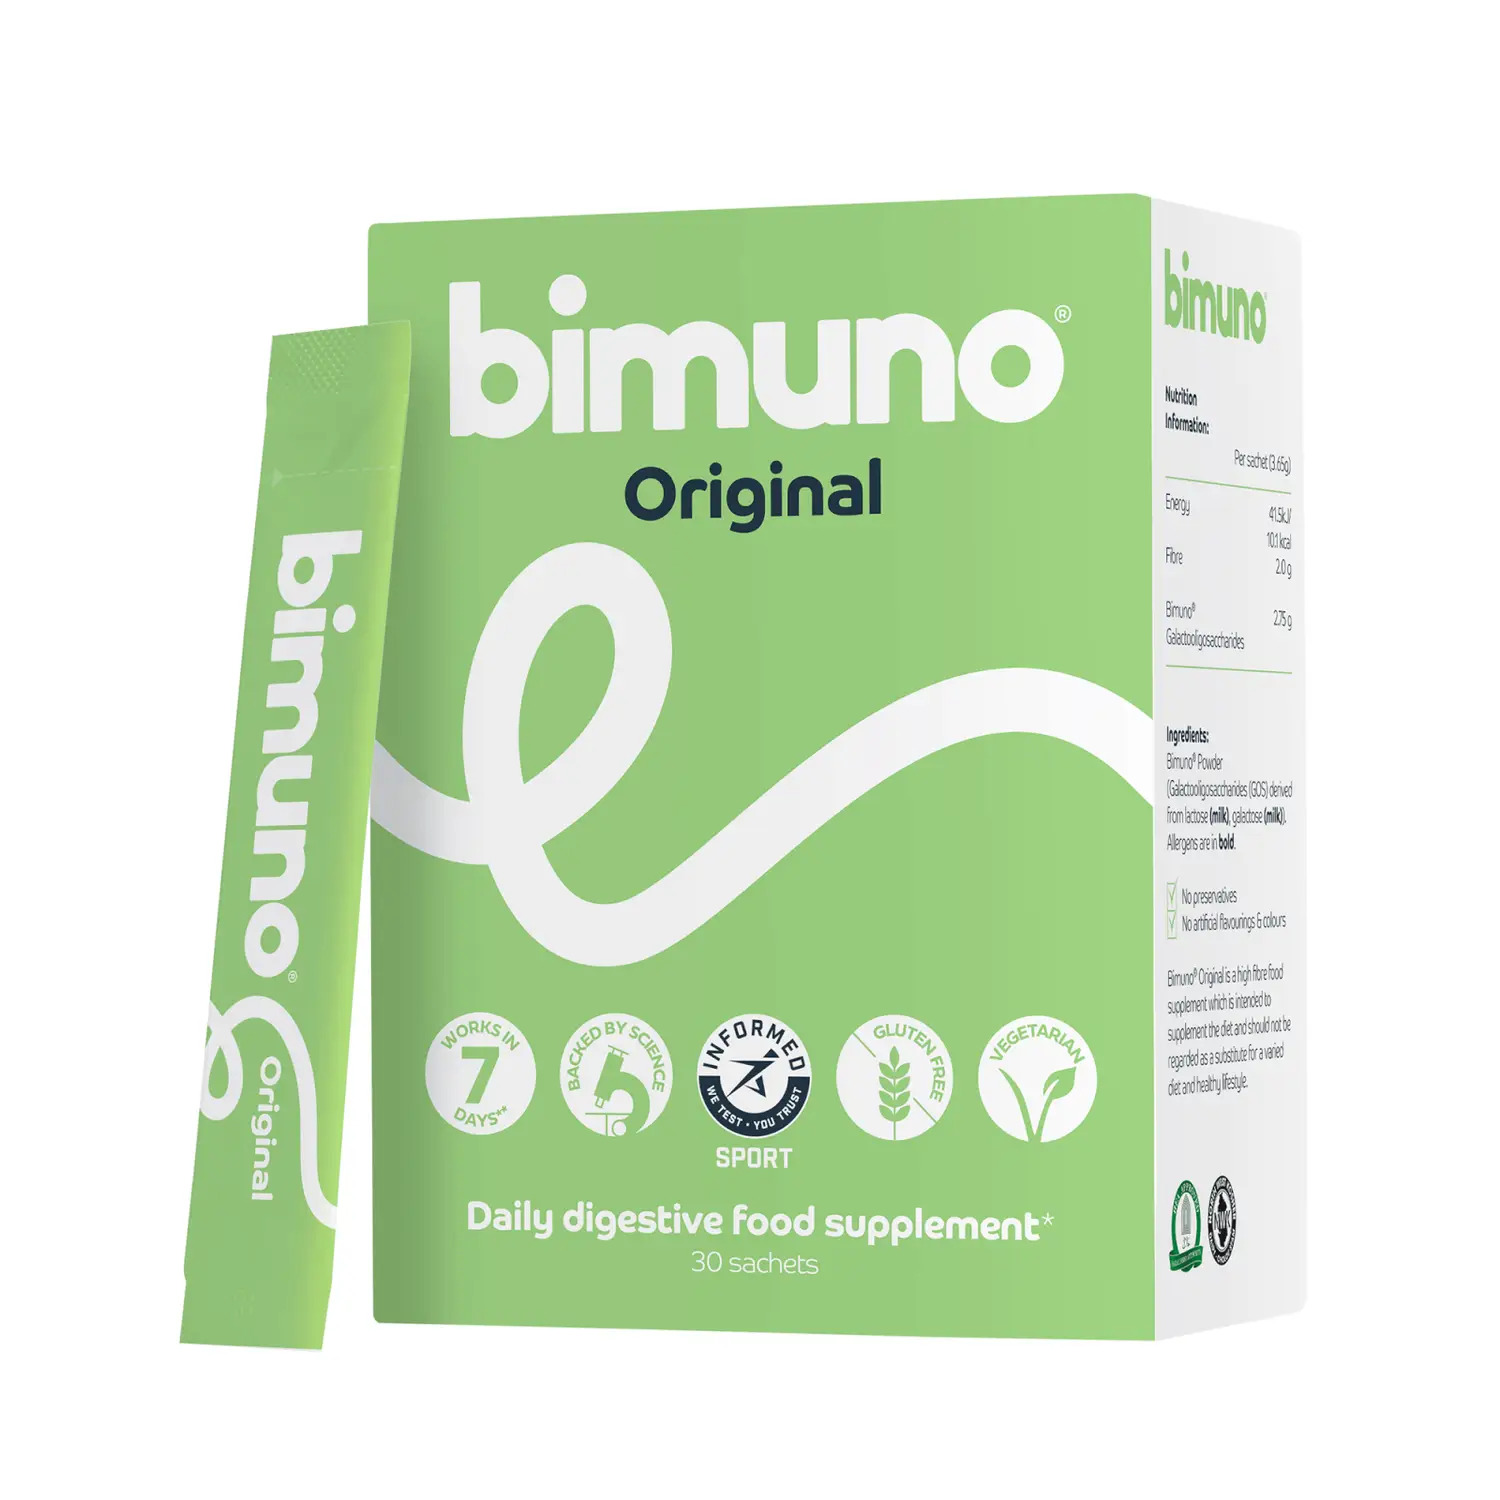 bimuno fiber prebiotic supplement